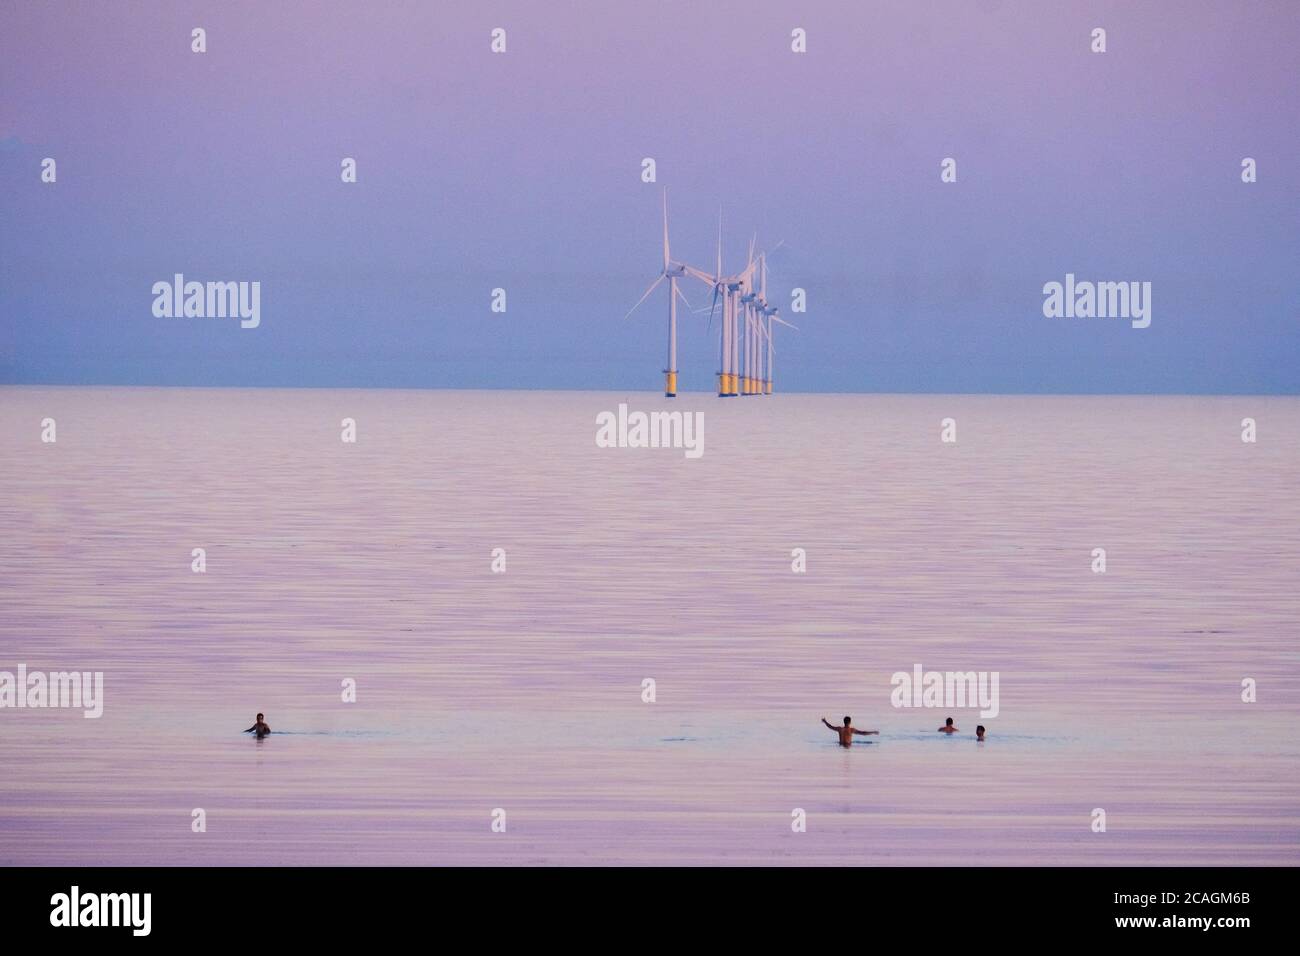 Worthing Beach, Worthing, Reino Unido. 6 de agosto de 2020. La gente nade en el mar tranquilo mientras el sol se pone brillando en una cálida noche de verano. El Parque Eólico de Rampion se puede ver en el fondo, 13km-16km de la costa. Imagen de crédito: Julie Edwards/Alamy Live News Foto de stock